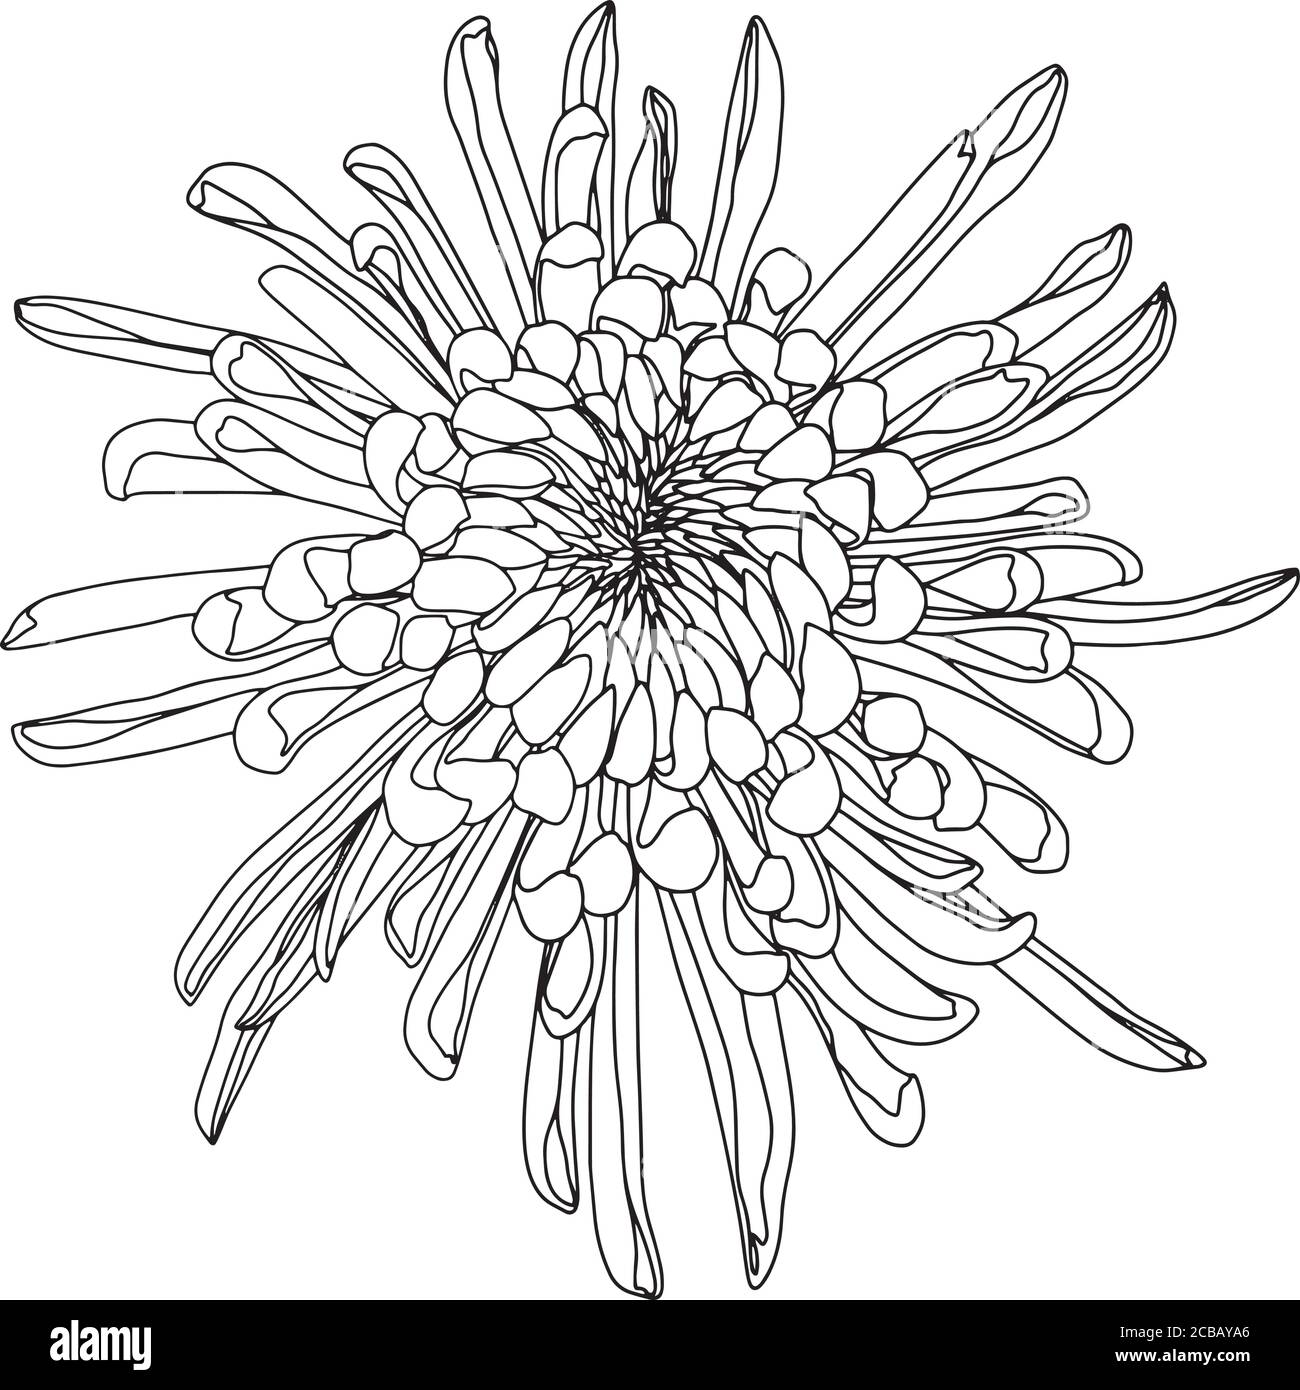 Vektor-Illustration von Blumenmuster Stock Vektor